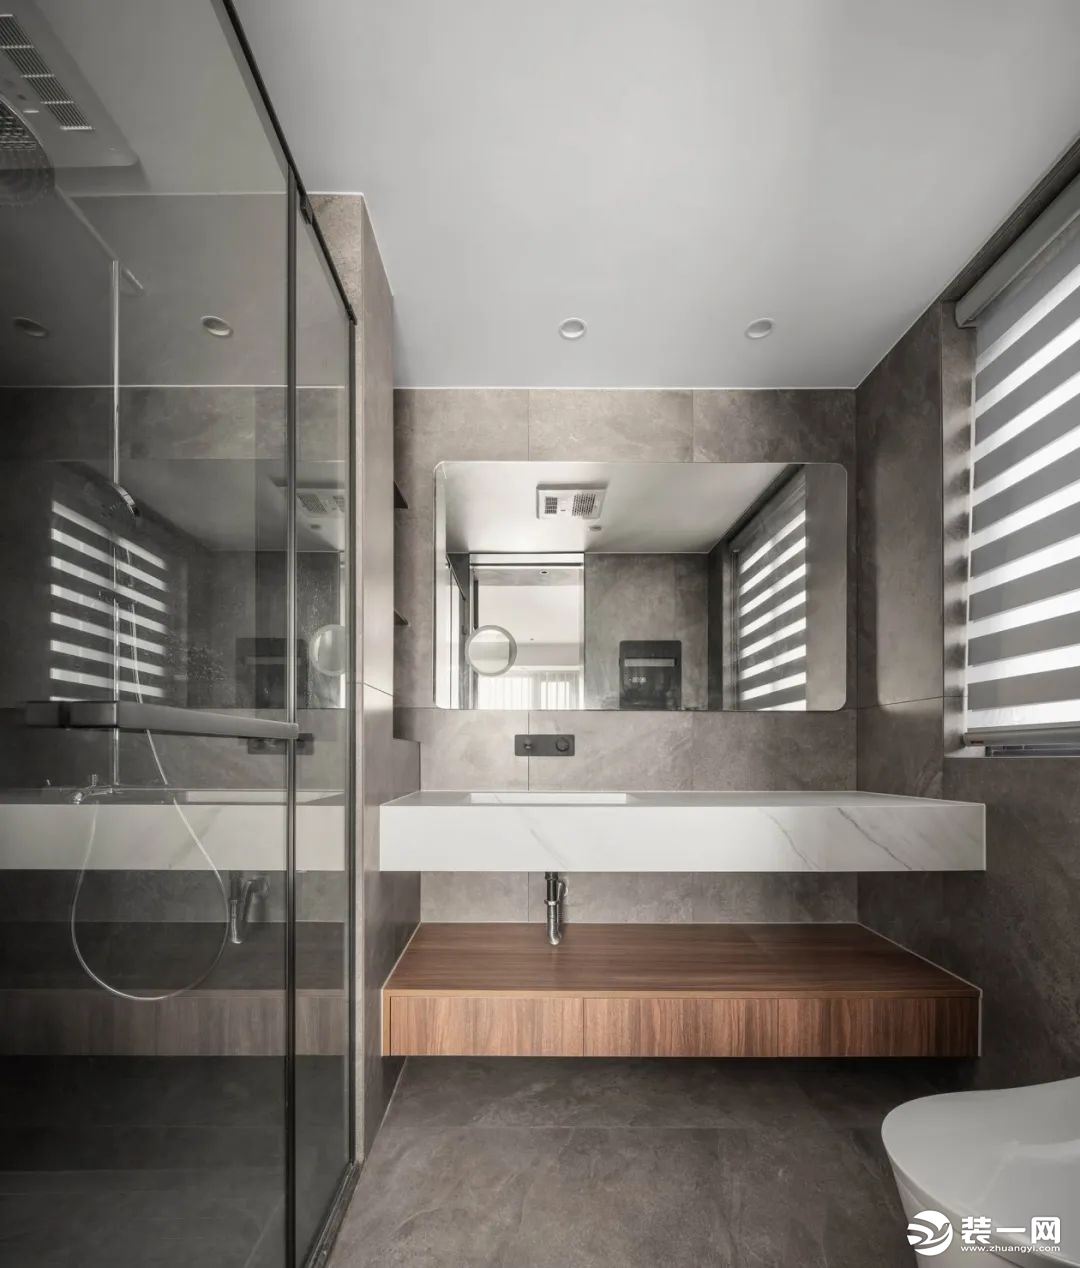 卫生间呼应整体色调选用木色与白色搭配，简约大方。干湿分离的设计看起来优雅美观，更加卫生。